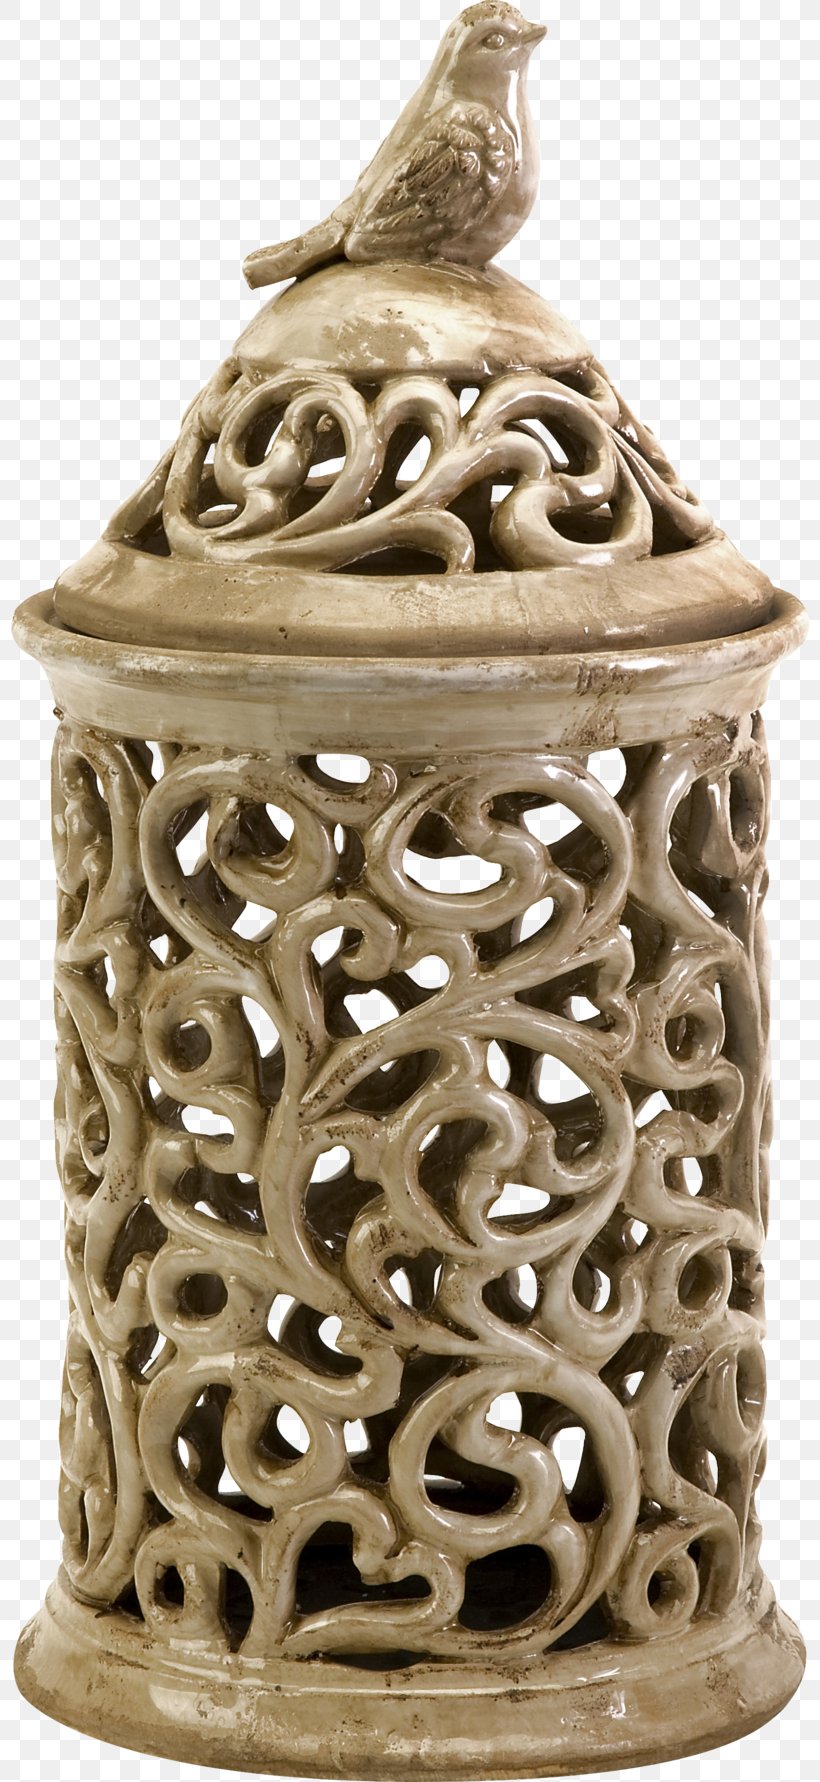 Ceramic Vase Artifact Bank, PNG, 800x1782px, Ceramic, Advertising, Artifact, Bank, Bird Download Free